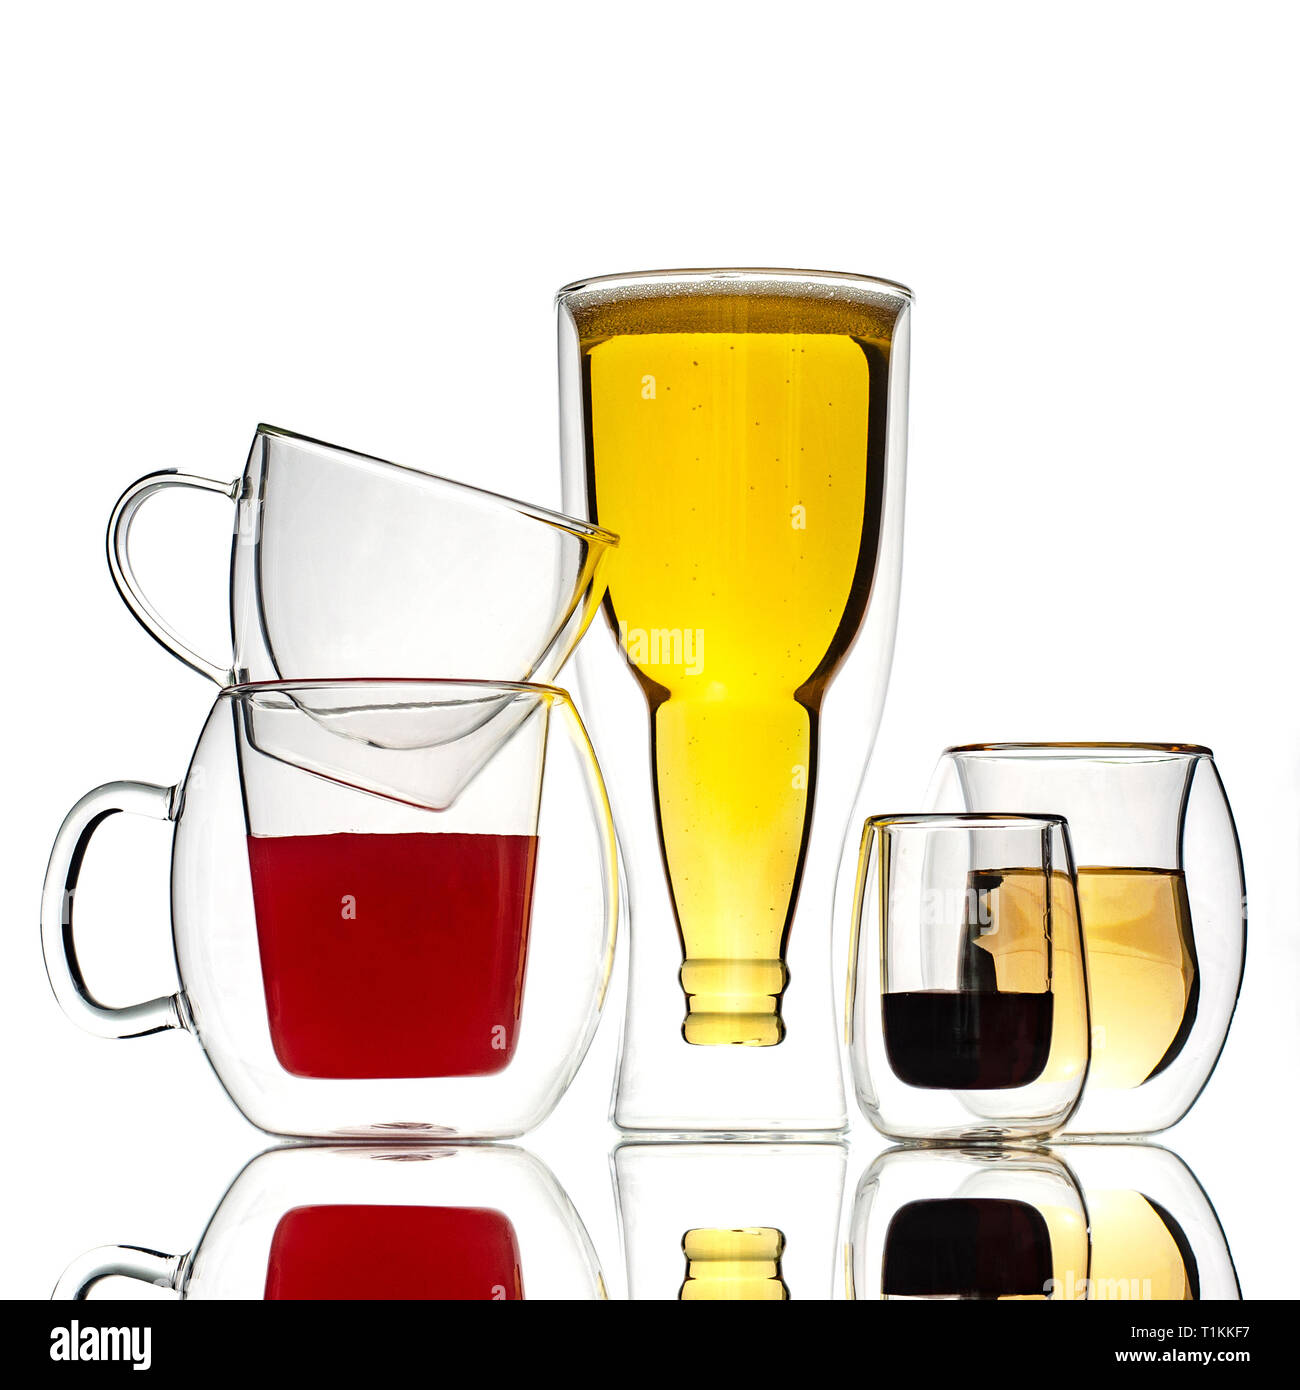 Gläser und Tassen mit doppelten Wänden, auf einem weißen Hintergrund. Isoliert. Stockfoto